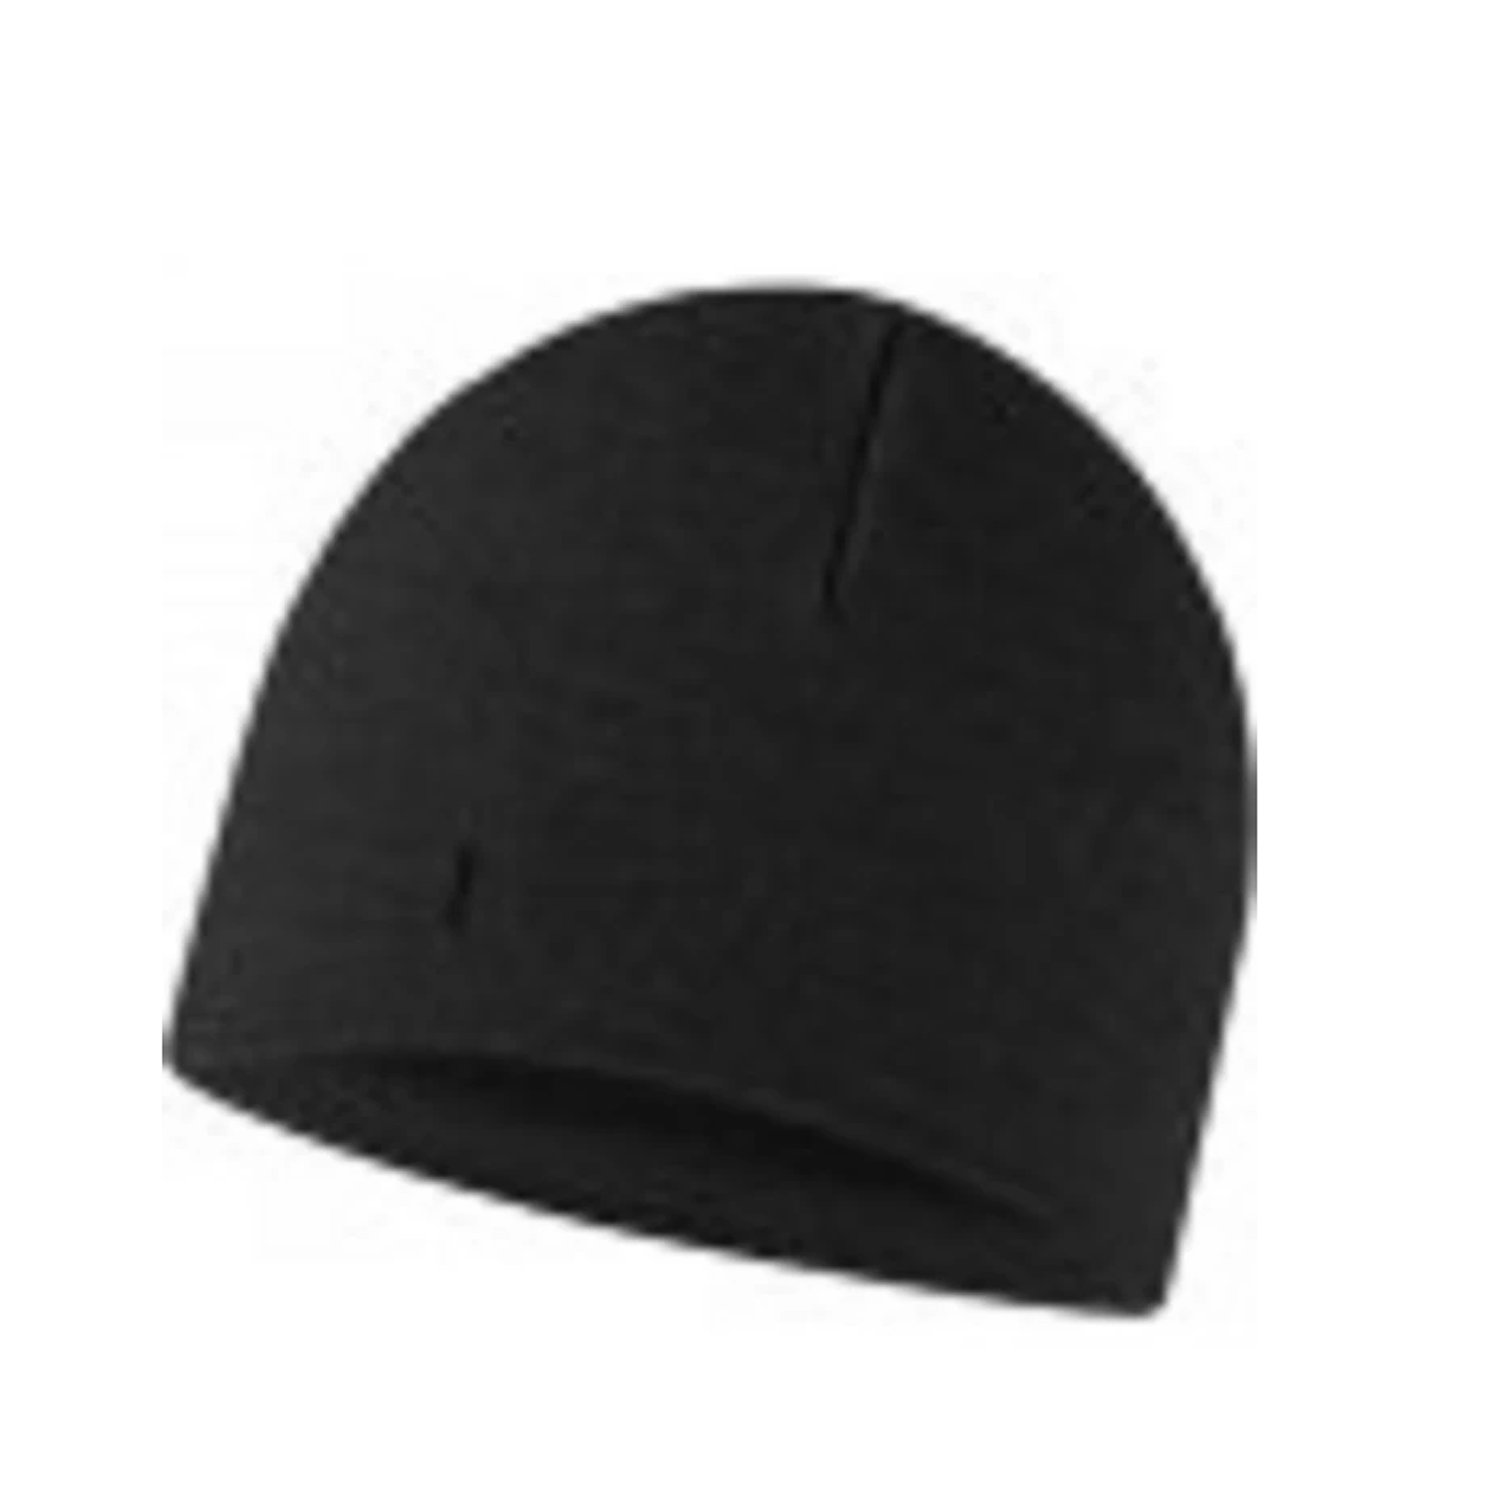 Шапка Buff Merino Fleece Hat, US:one size, черный, 129446.999.10.00, размер Универсальные